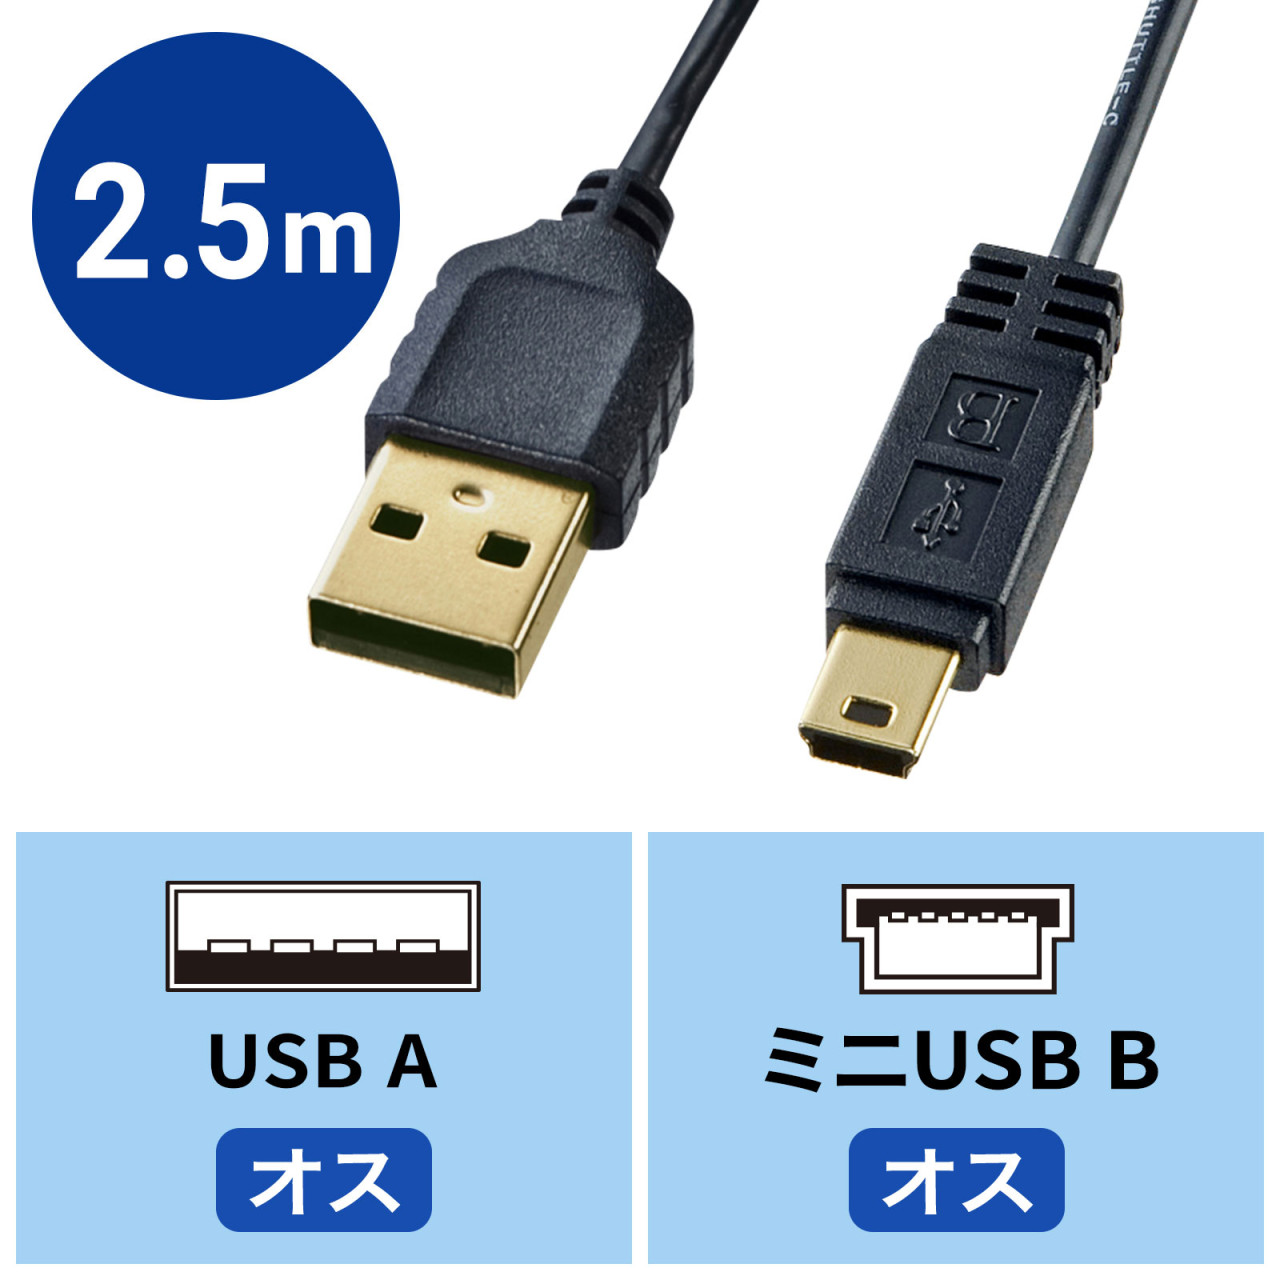 サンワサプライ 極細USBケーブル (USB2.0 A-Bタイプ) 2,5m ブラック